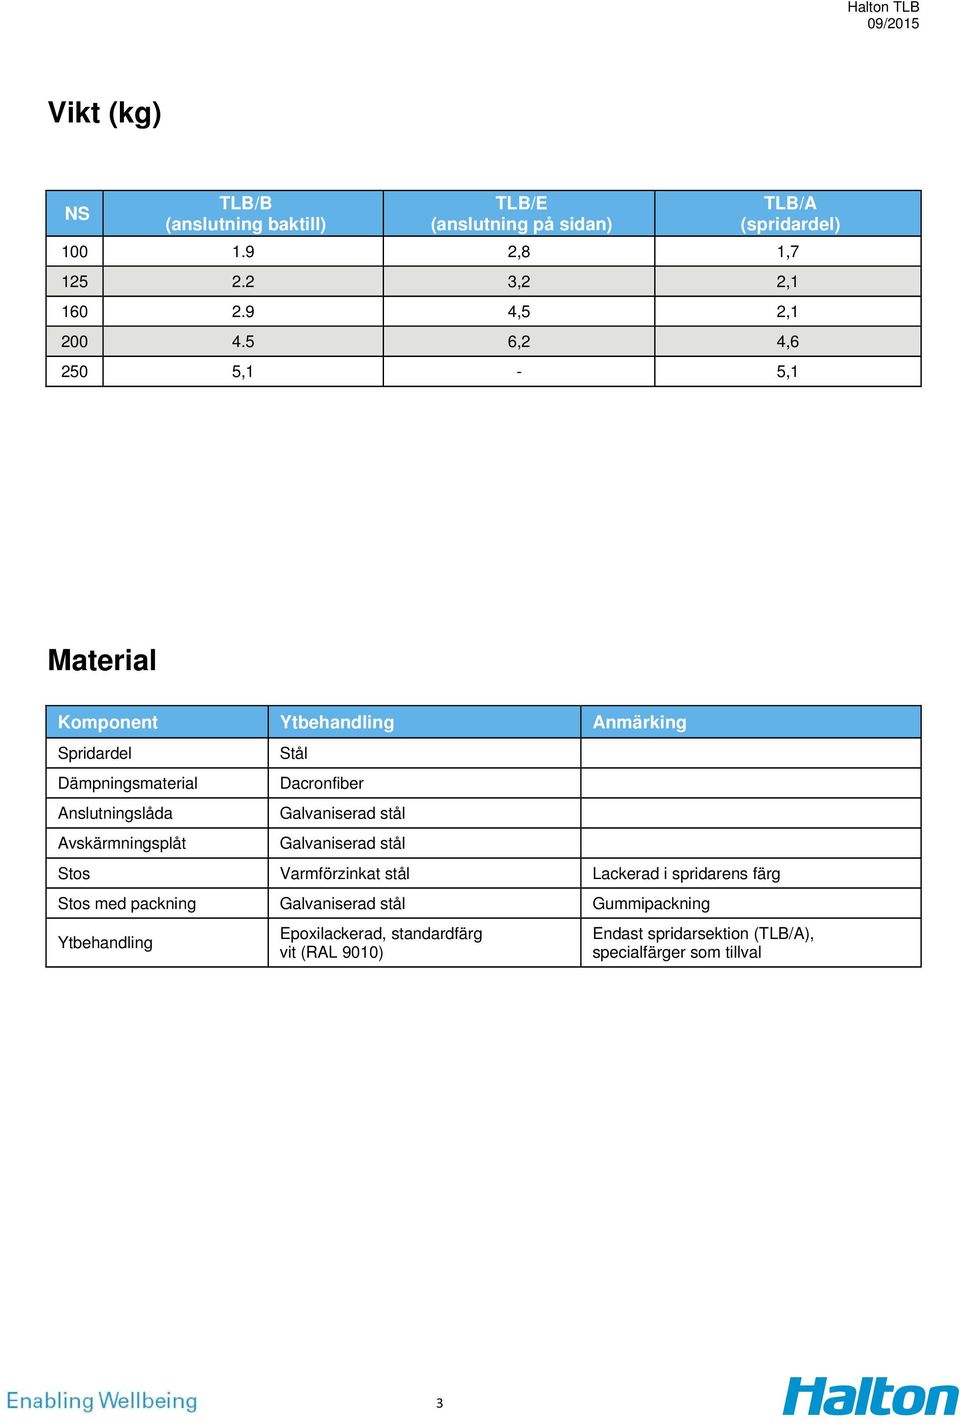 5 6,2 4,6 250 5,1-5,1 Material Komponent Ytbehandling Anmärking Spridardel Dämpningsmaterial Anslutningslåda Avskärmningsplåt Stål